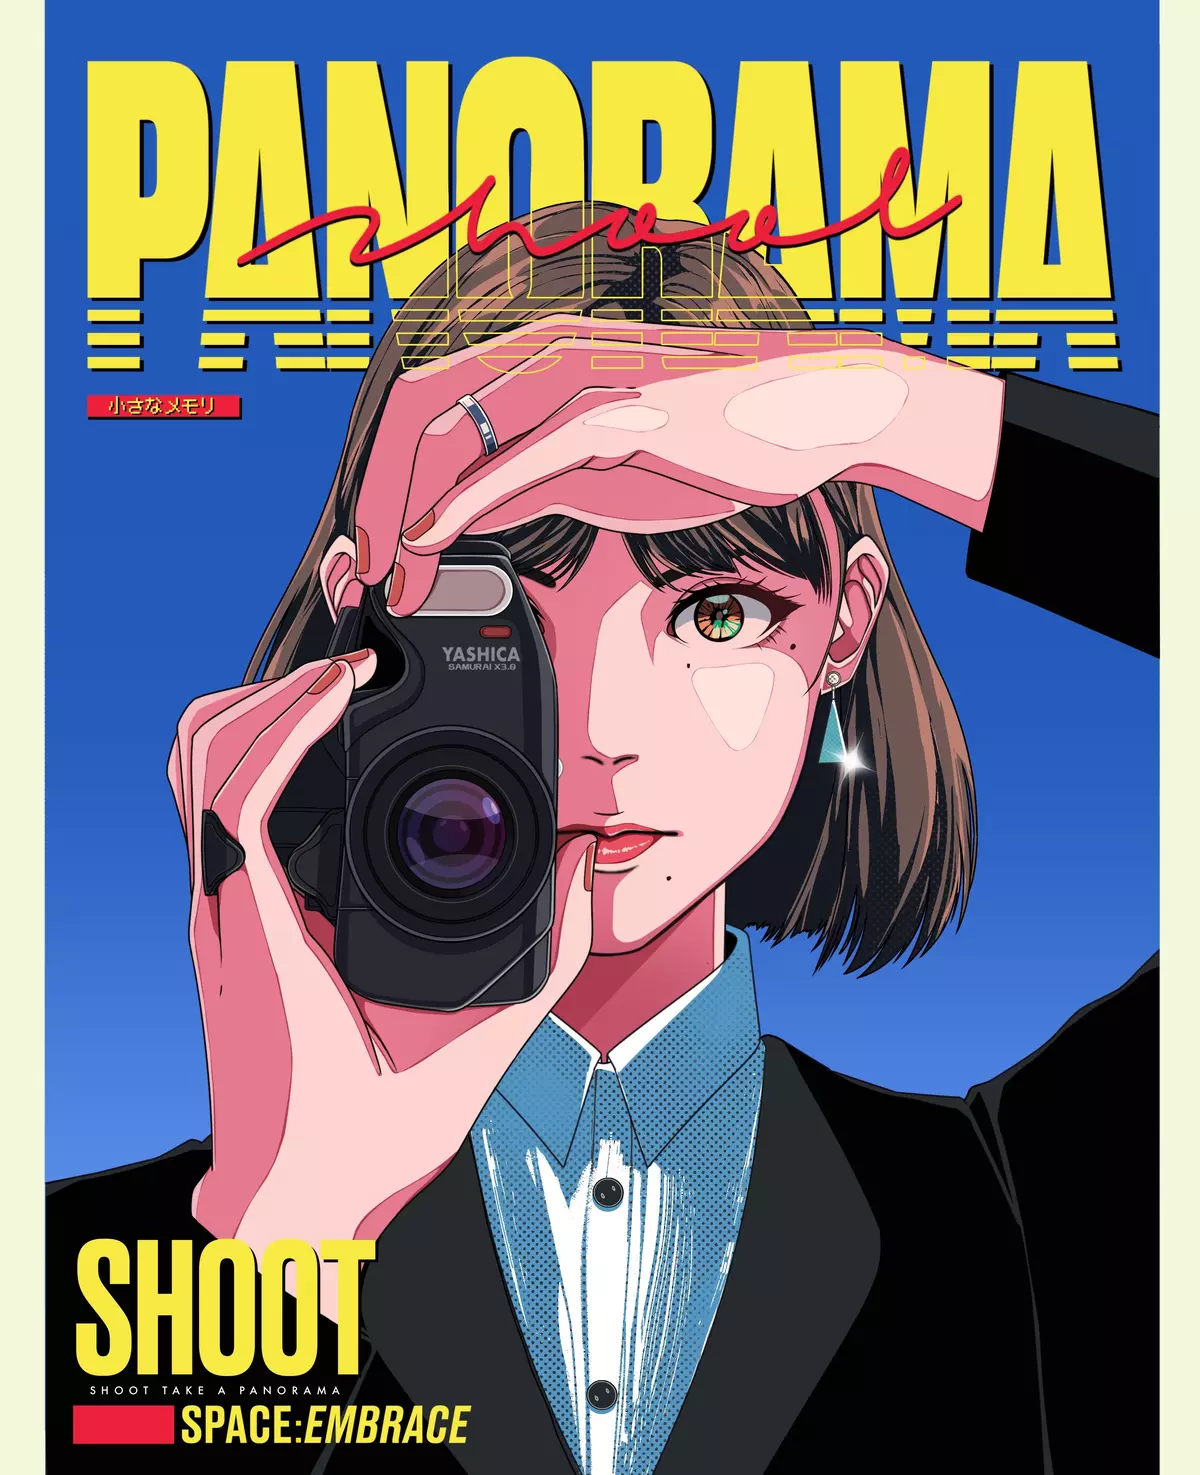 Shoot Take a Panorama